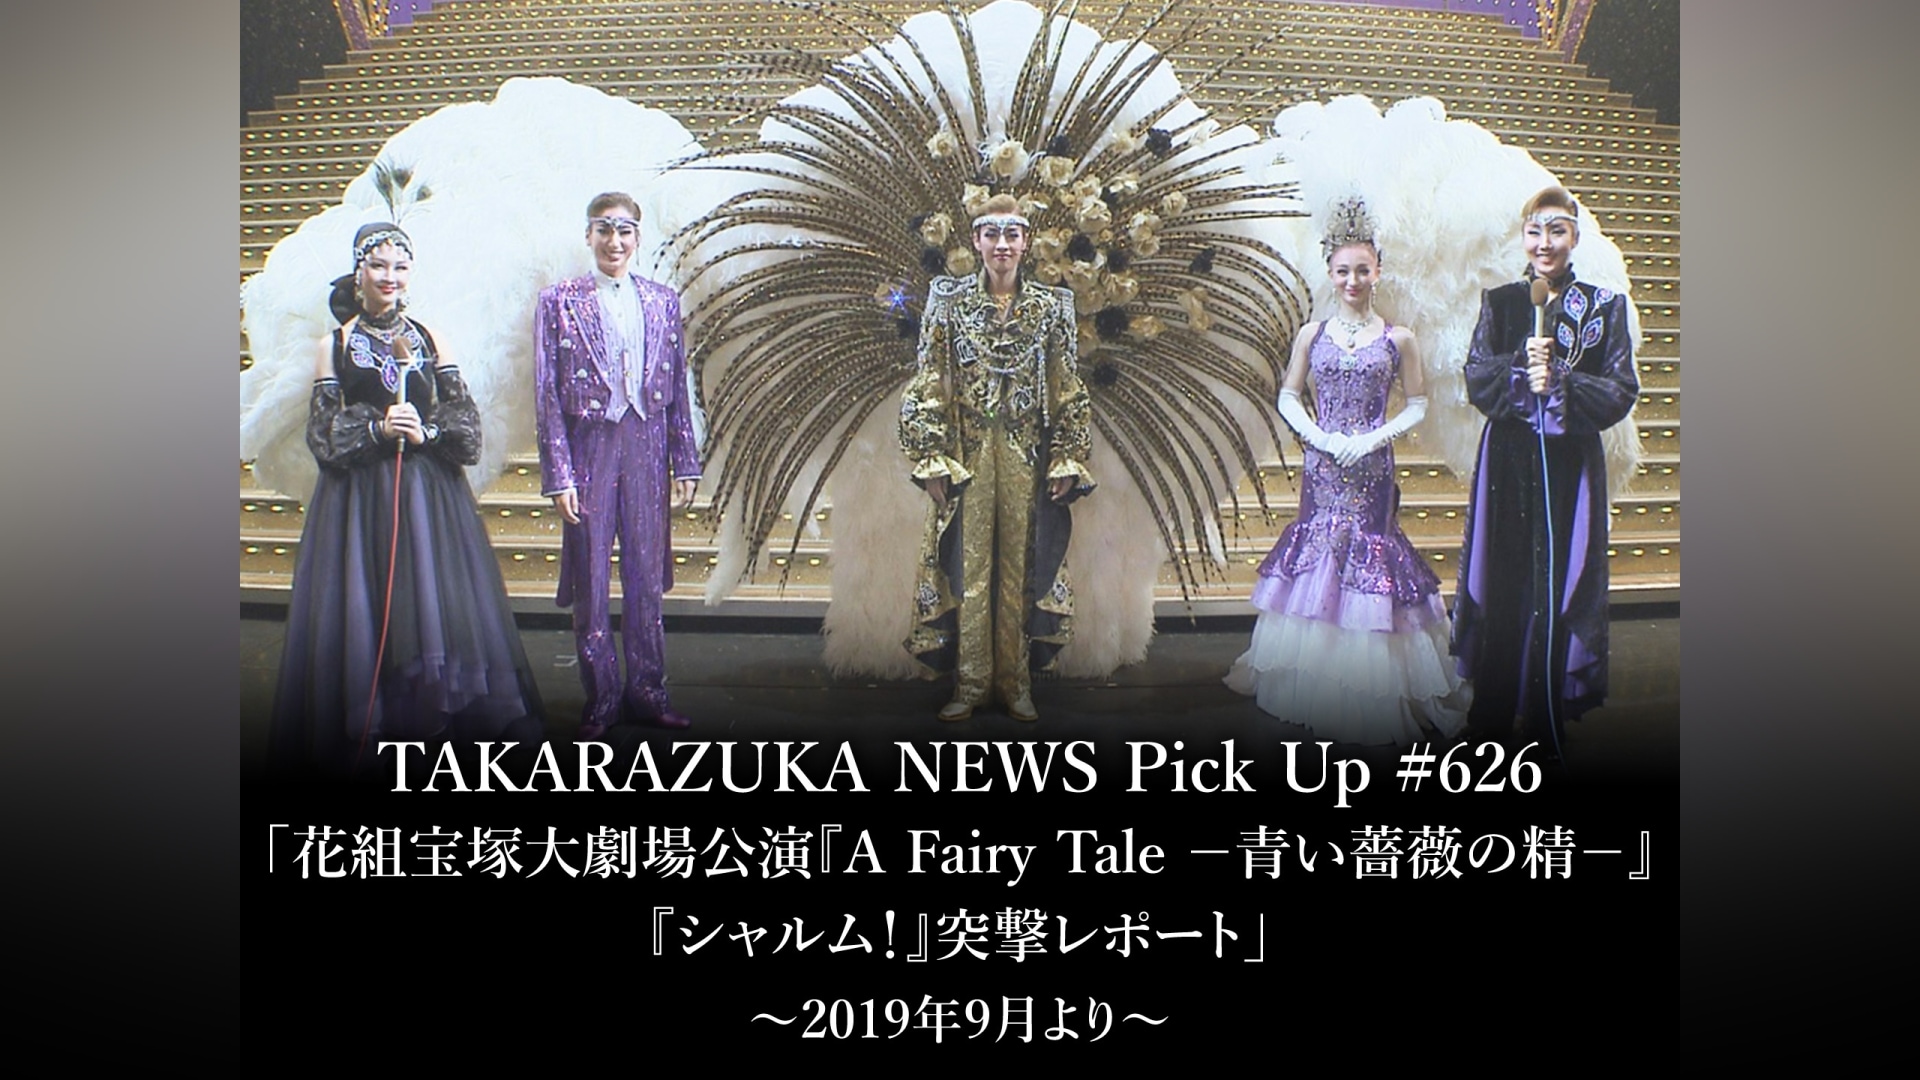 TAKARAZUKA NEWS Pick Up #626「花組宝塚大劇場公演『A Fairy Tale  －青い薔薇の精－』『シャルム!』突撃レポート」～2019年9月より～